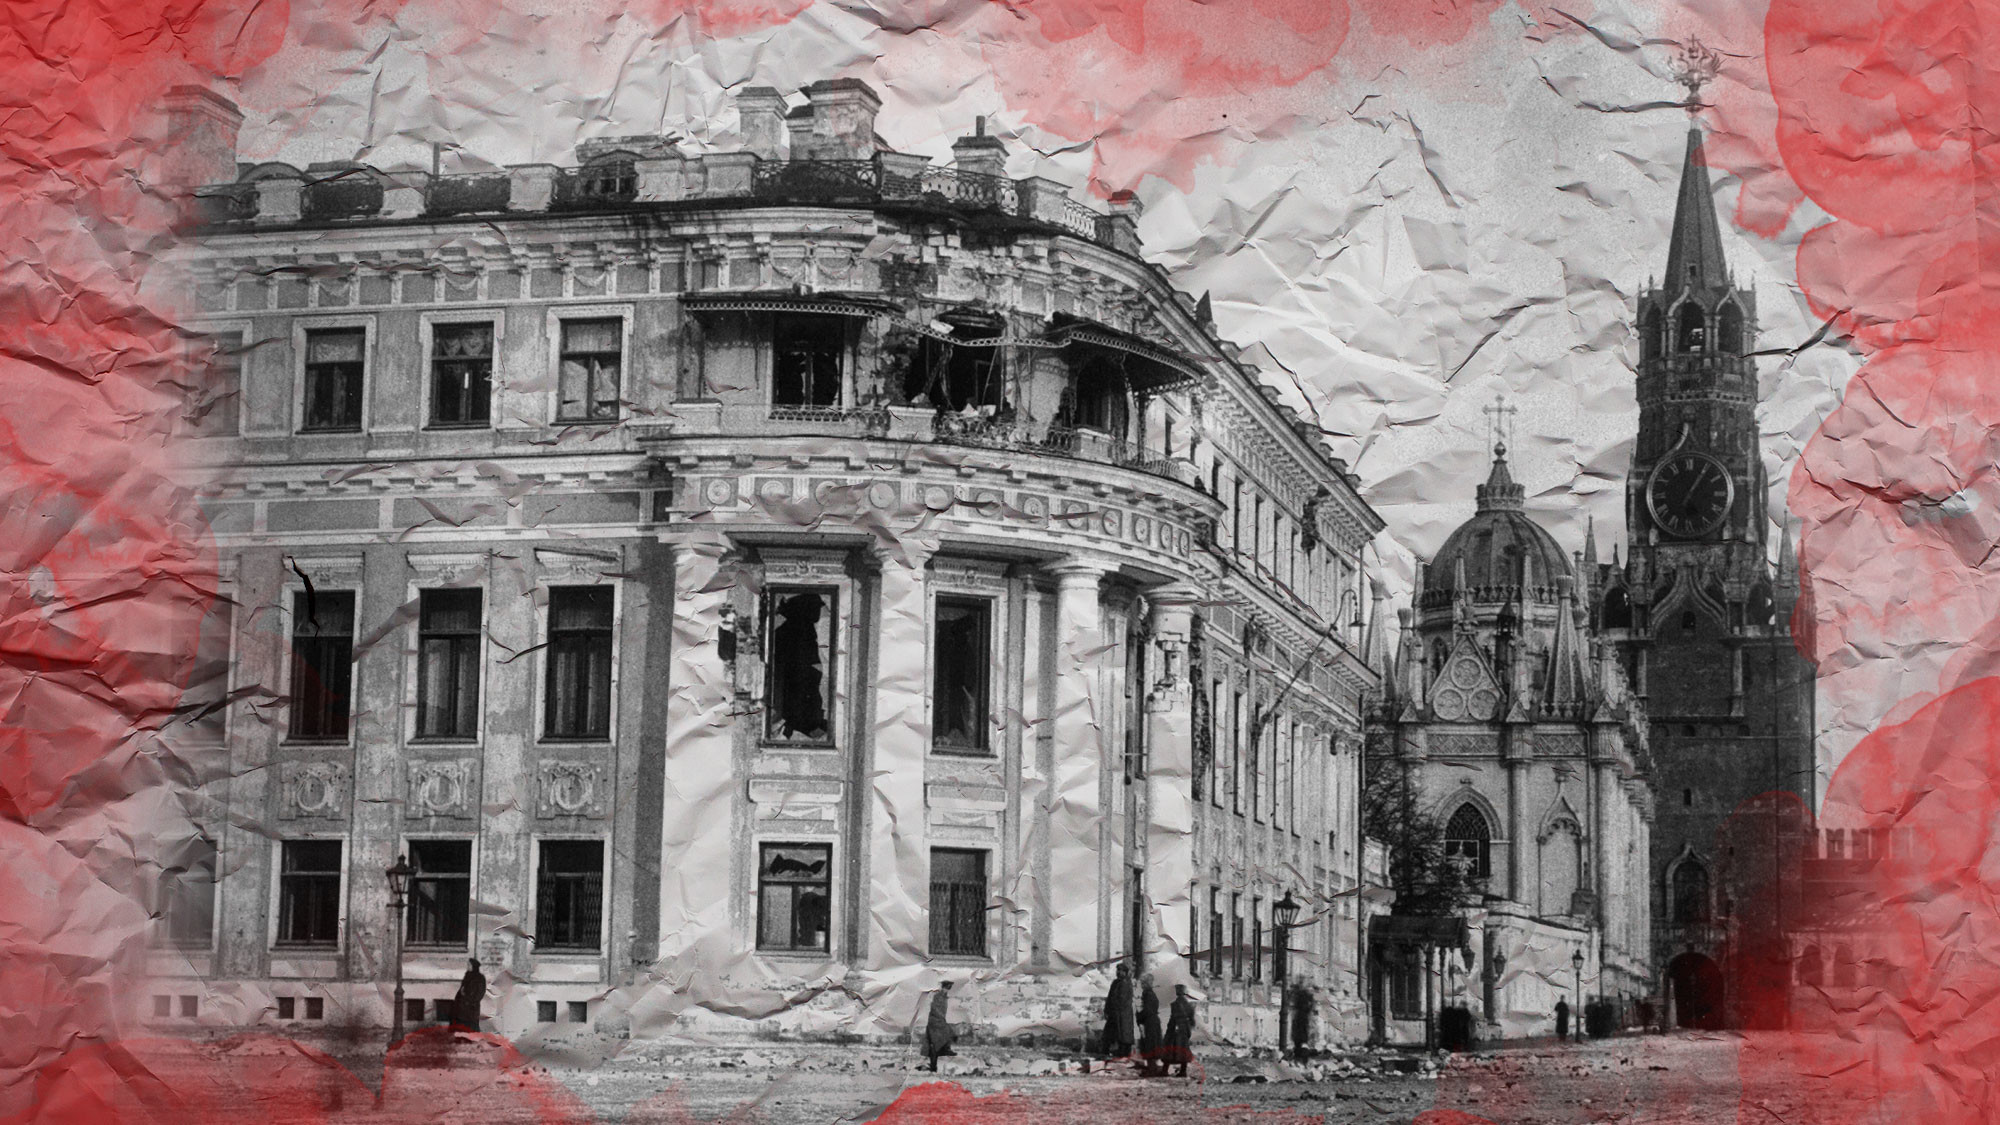 Малый Николаевский дворец в Кремле, повреждённый артиллерийским огнём во время октябрьских событий. Фото: © Wikipedia.org Creative Commons